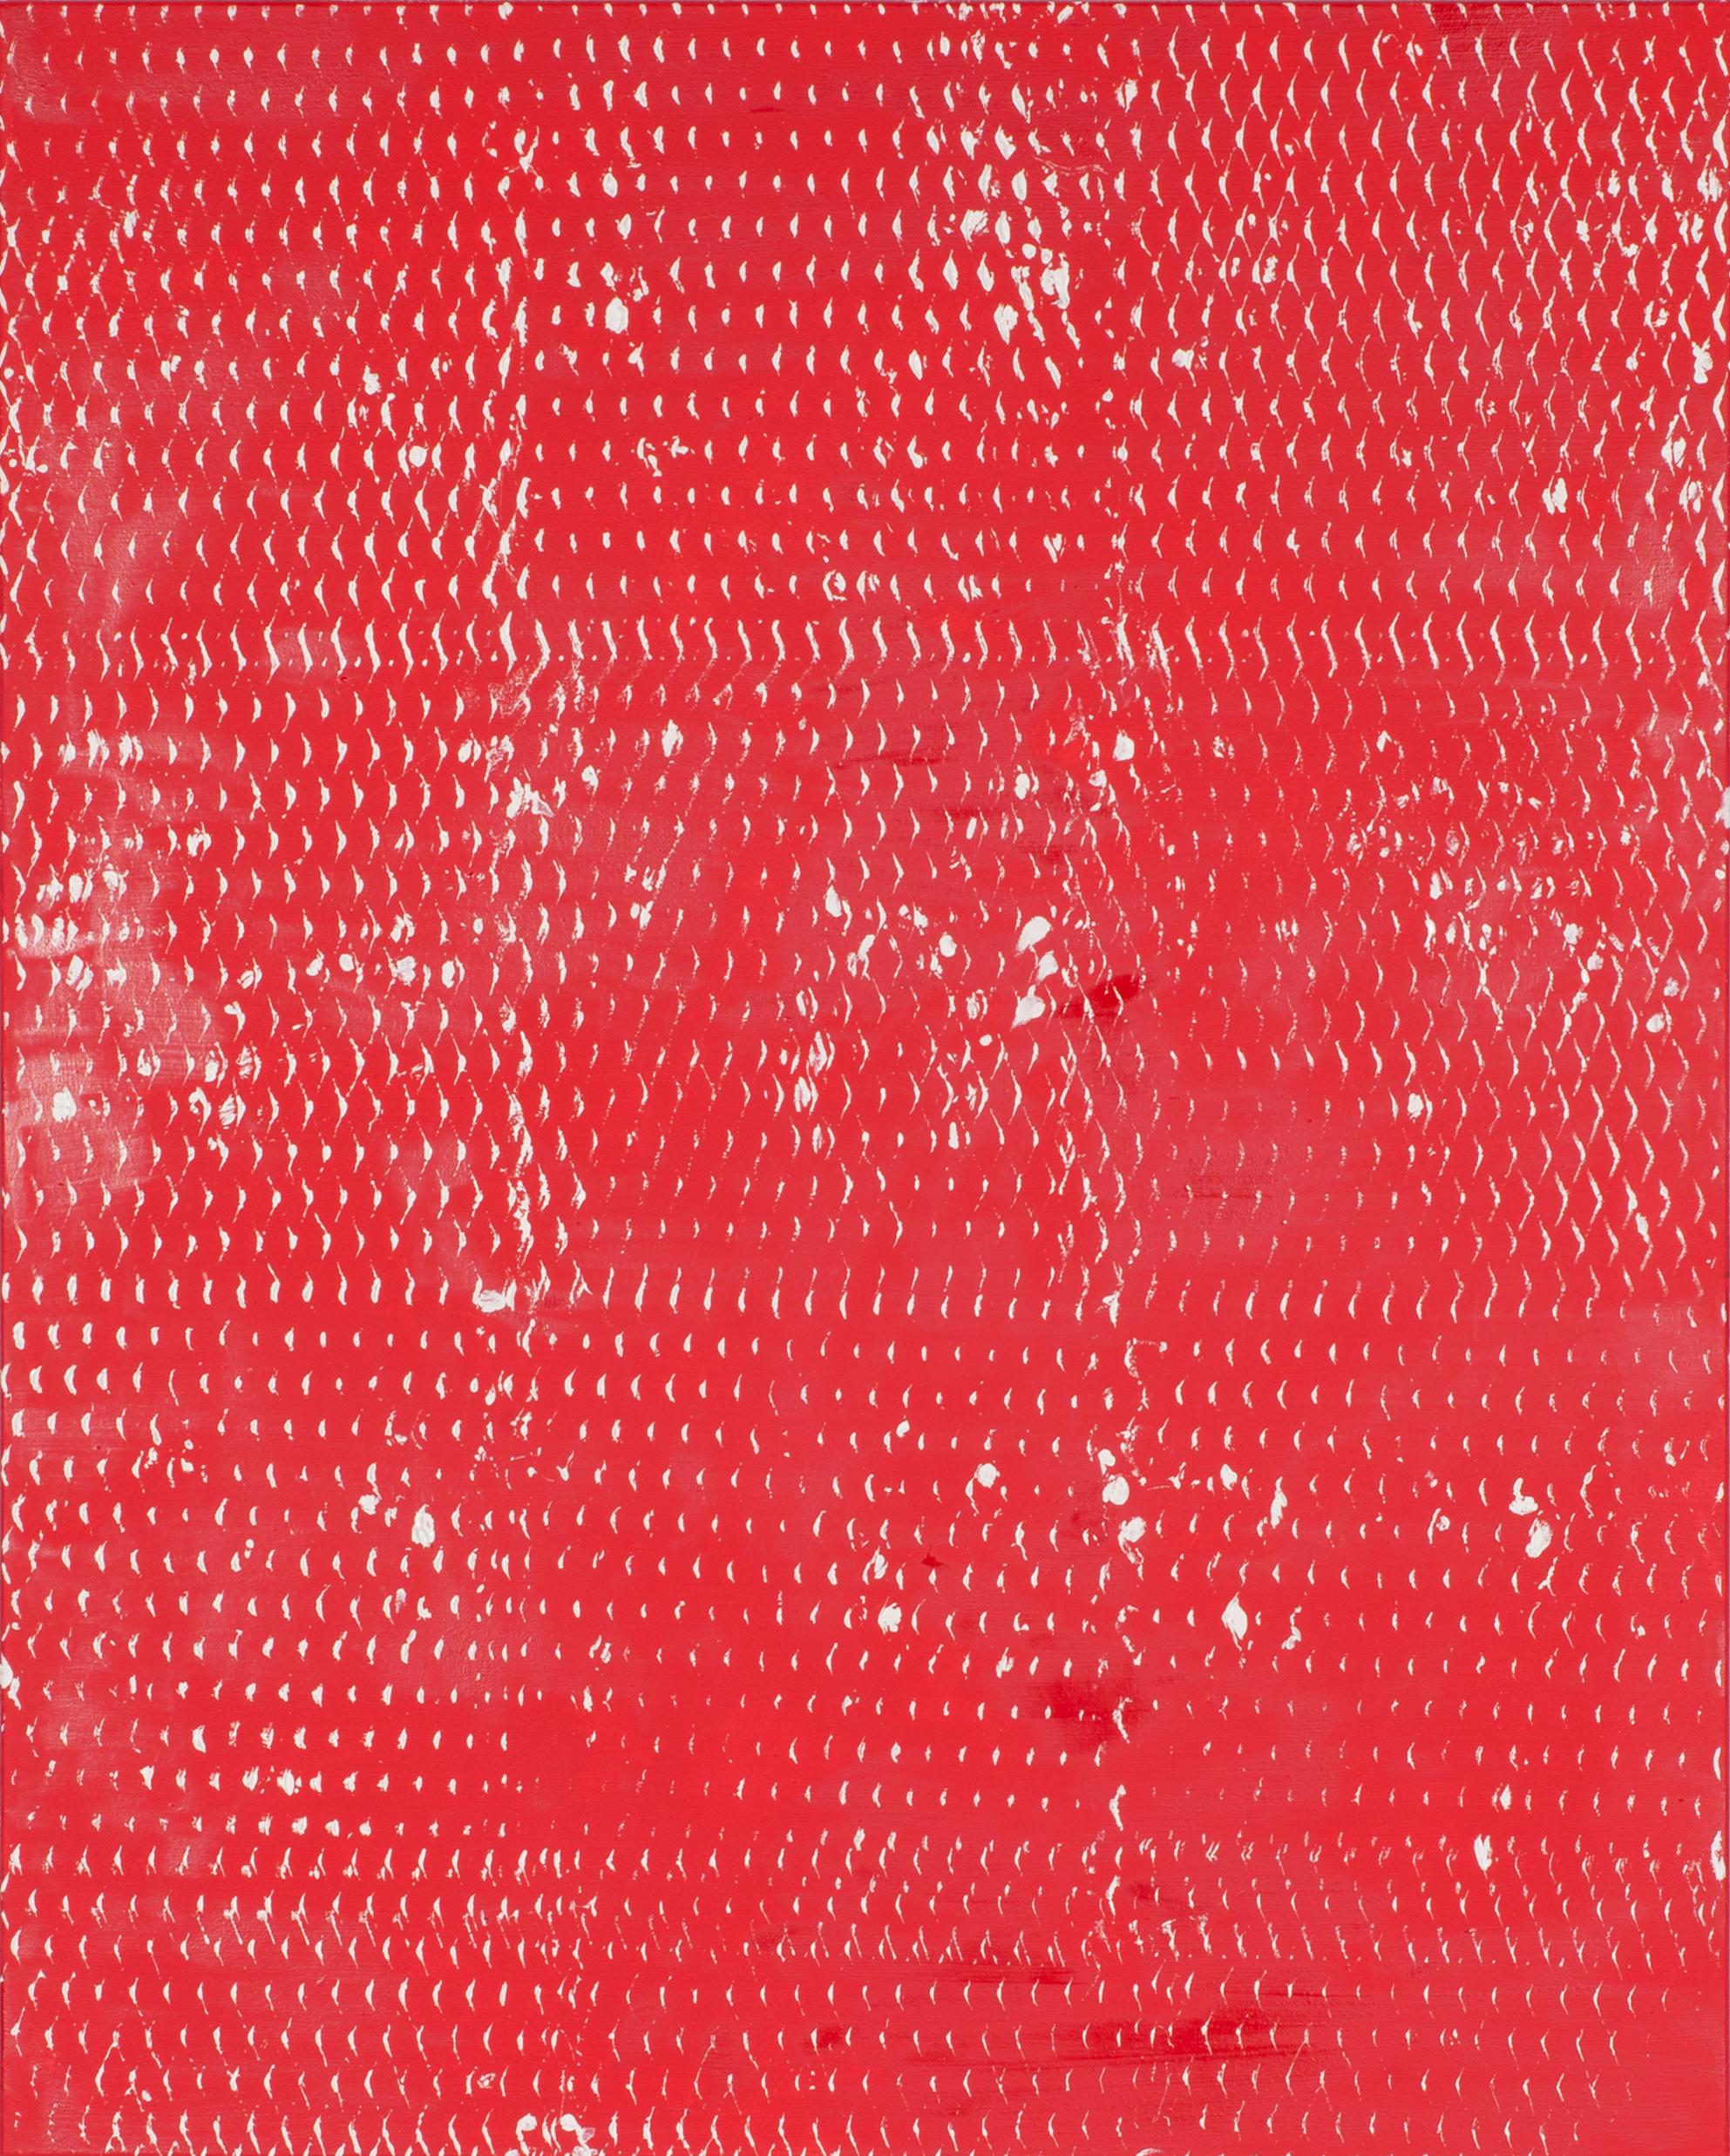 Rot und Weiß II und III, Expanded Metal Painting. Diptychon, 2017 von Clemens Wolf
Aus der Serie Streckmetallbilder
Öl auf Leinwand
Gesamtgröße: 150 H x 240 B CM 
Einzelgröße: 150 H x 120 B CM 
Ausgepackt: 10 kg Ungefähr.
Verpackt: 60 kg